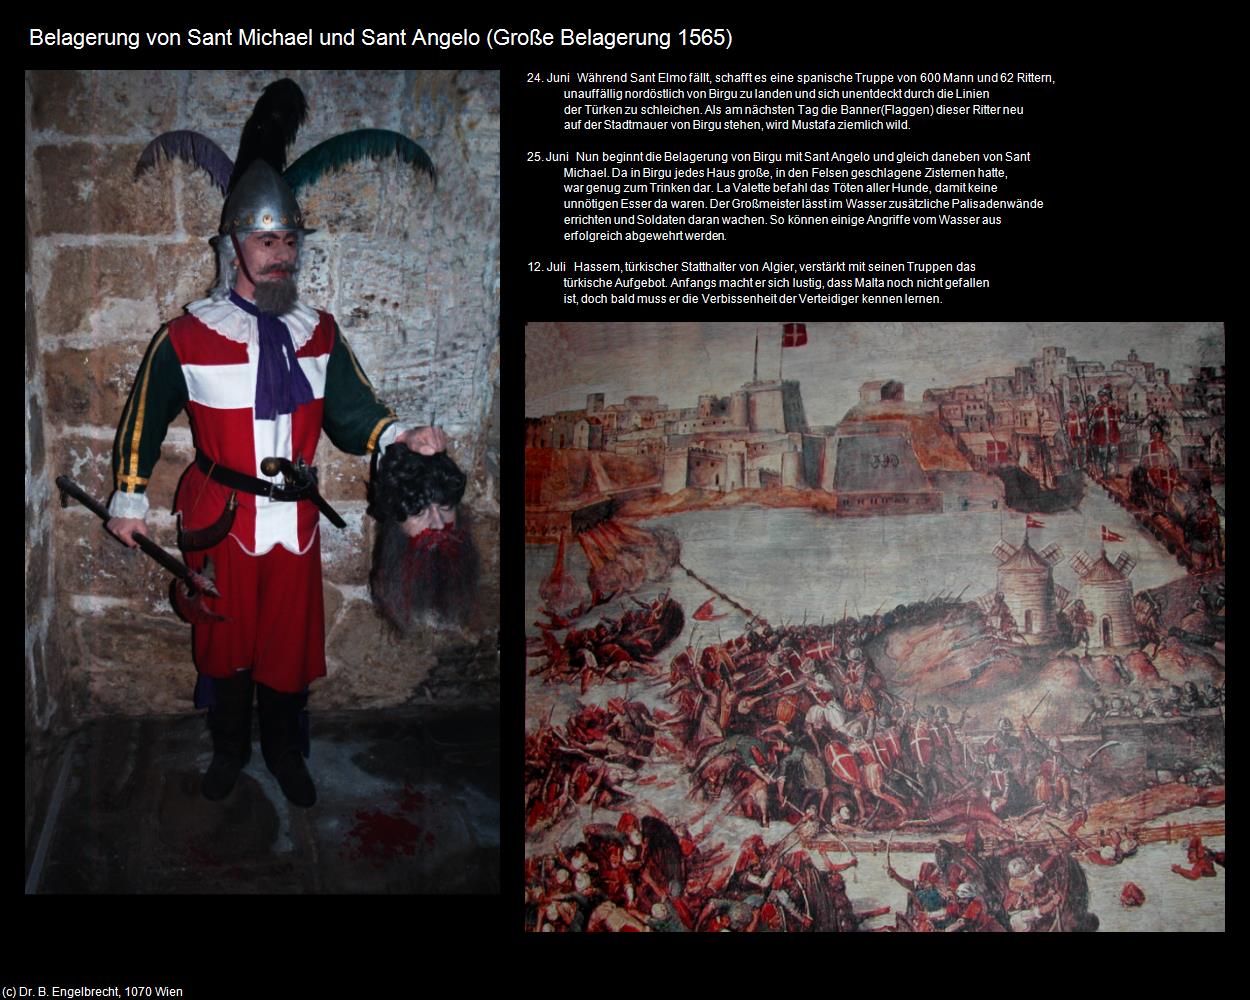 Belagerung von St. Michael und St. Angelo (+Große Belagerung 1565) in Malta - Perle im Mittelmeer